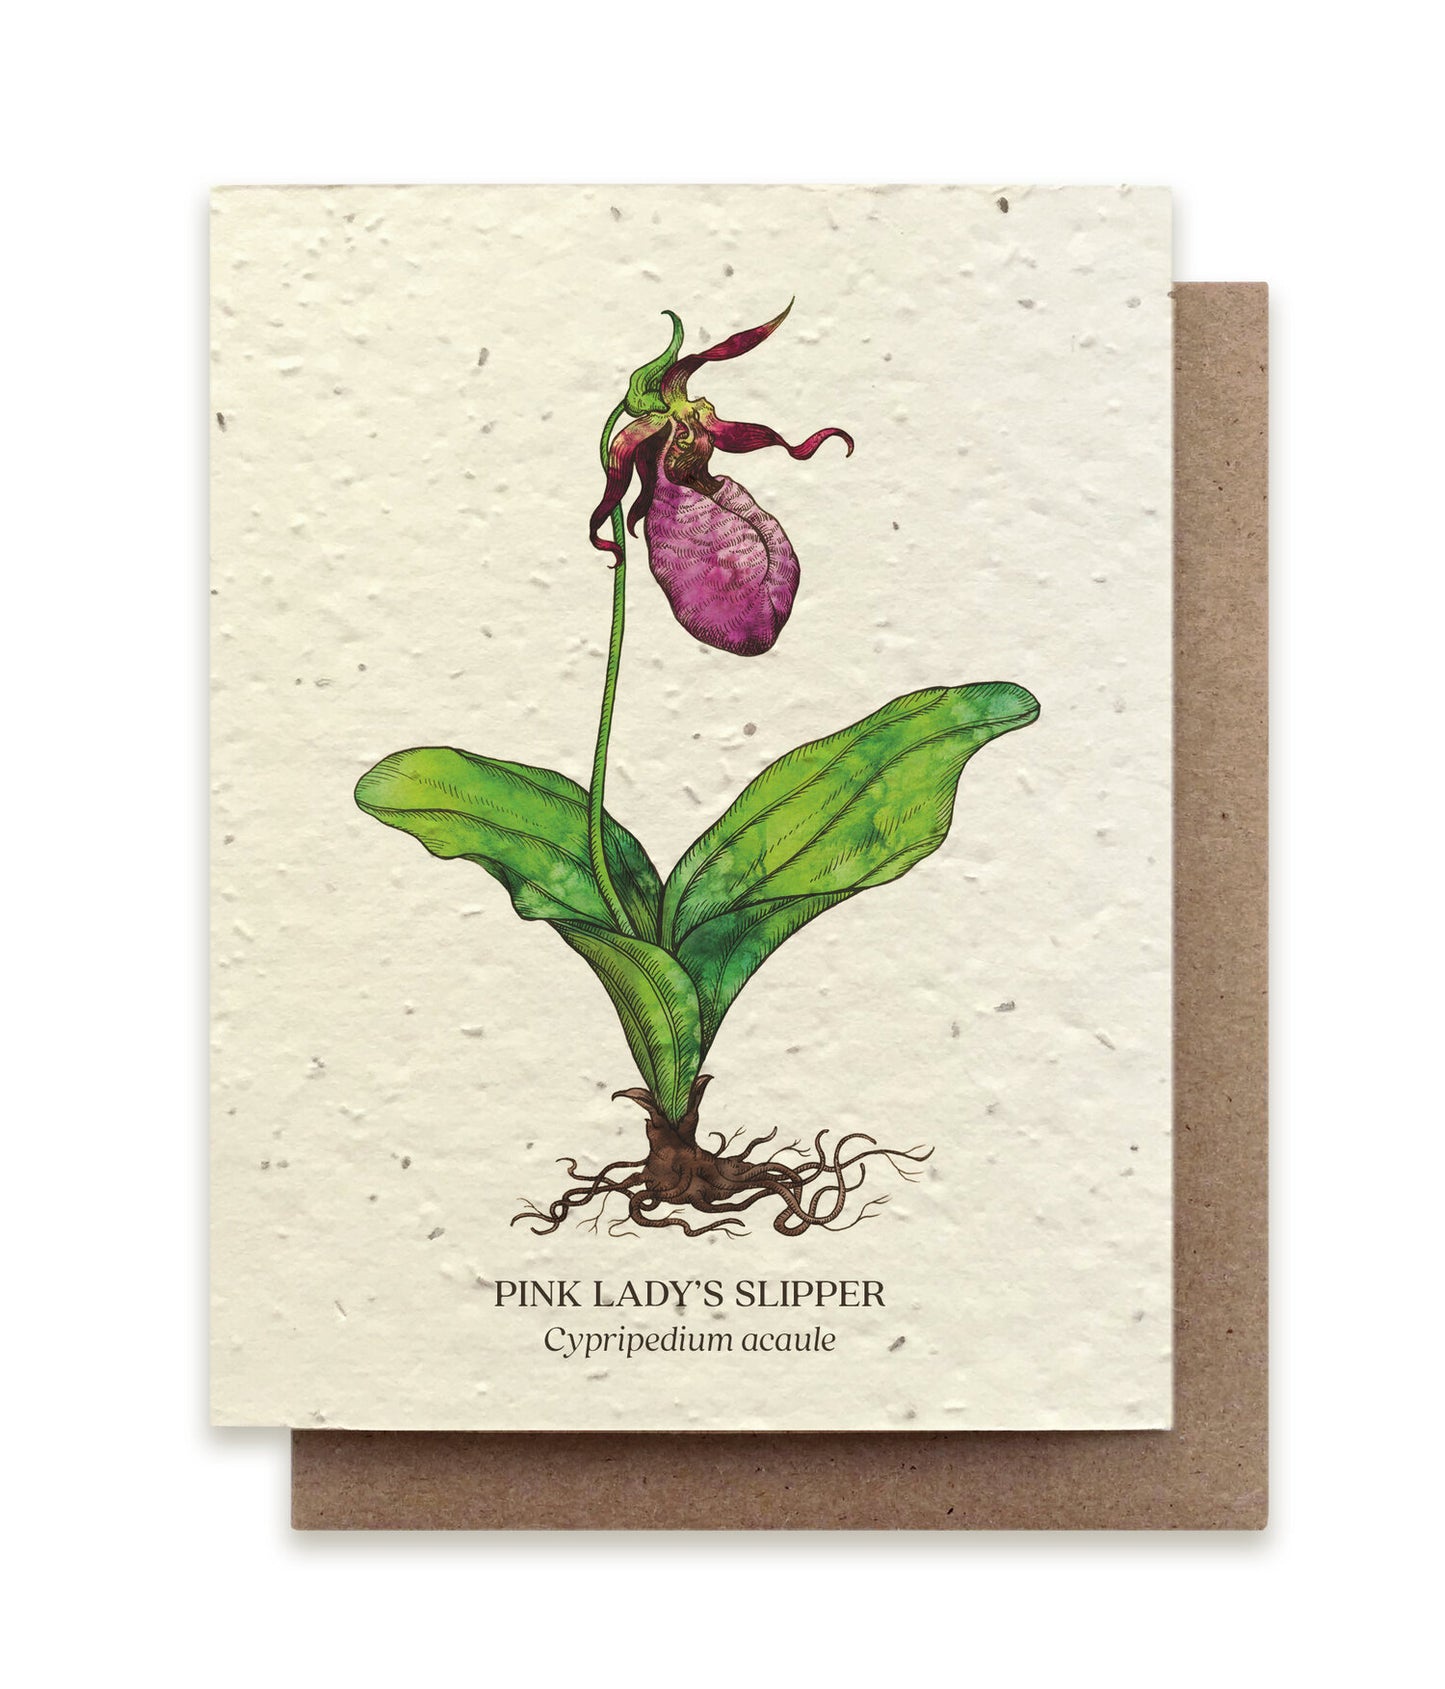 Postkort med motiv af en venussko orkide